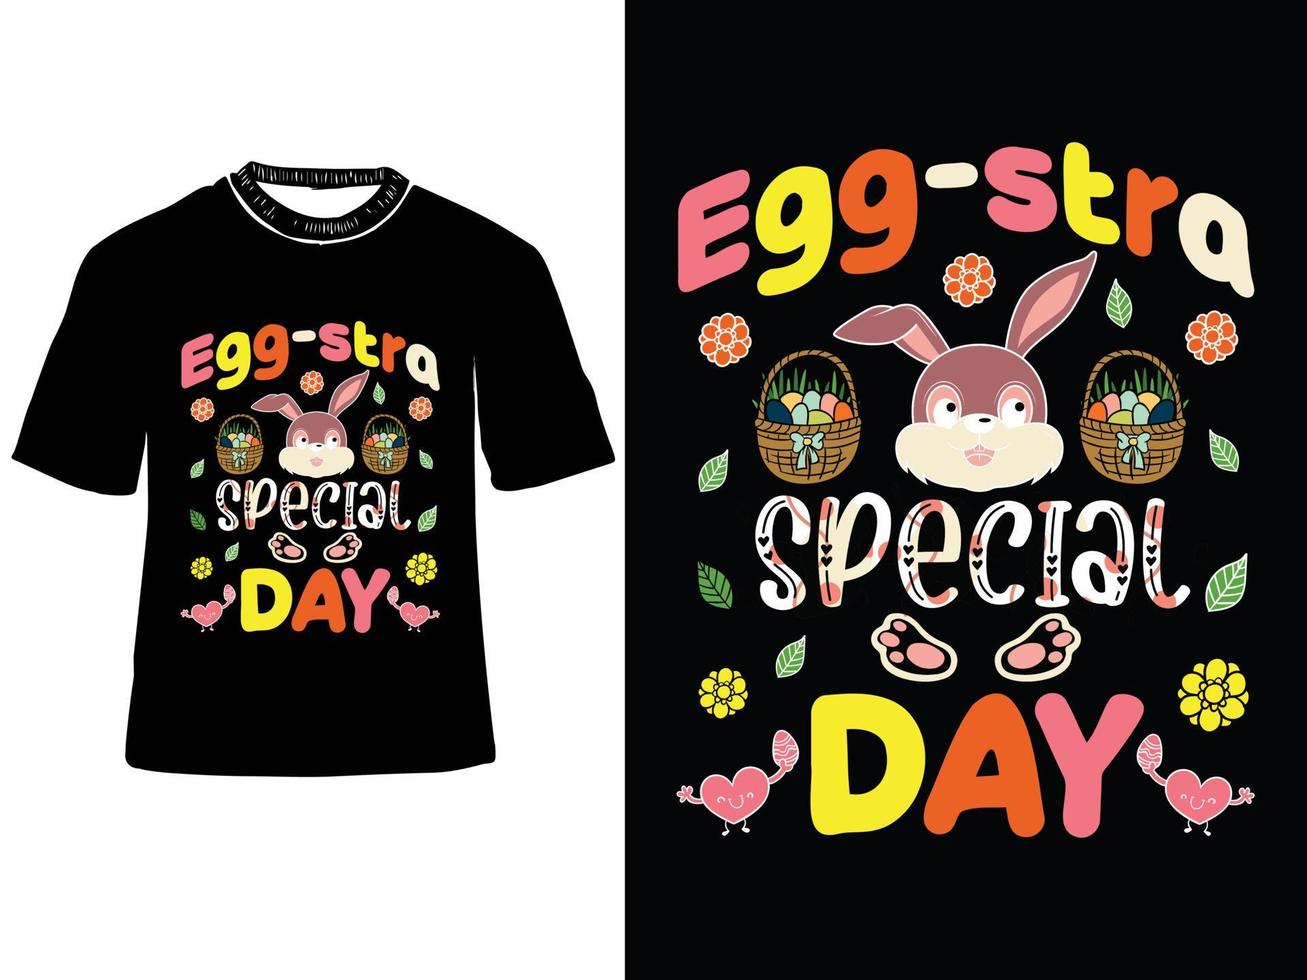 huevo-stra especial día, Pascua de Resurrección día t camisa, lupulado Pascua de Resurrección t camisa, Pascua de Resurrección conejito camiseta vector